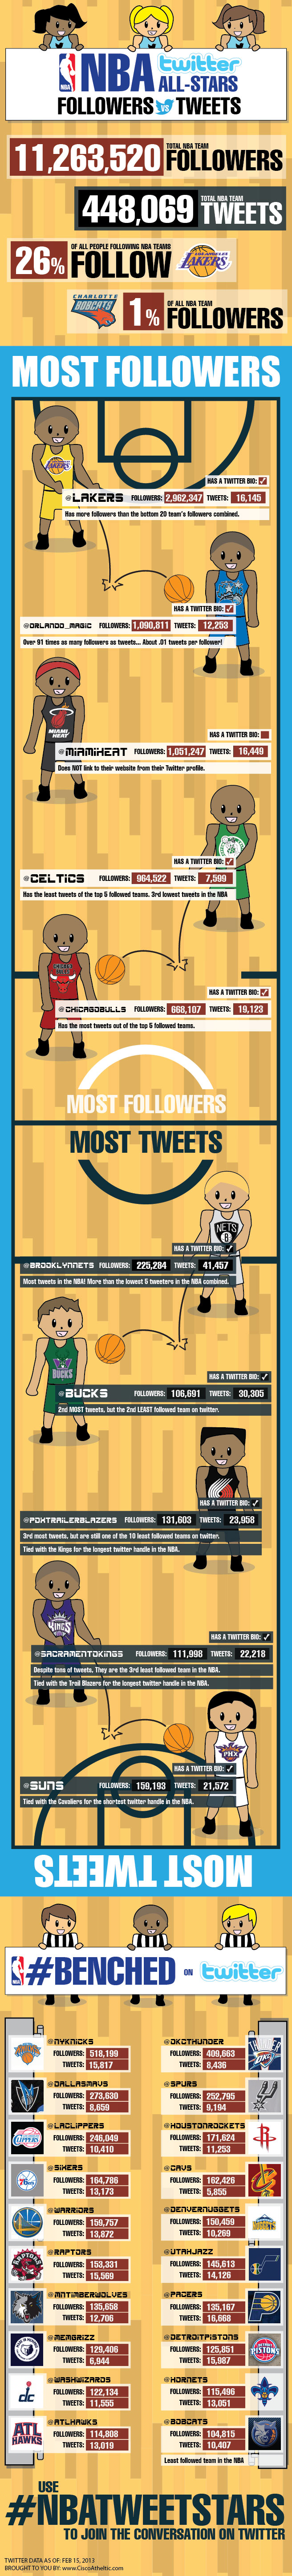 NBA Twitter All-Stars: Followers vs Tweets